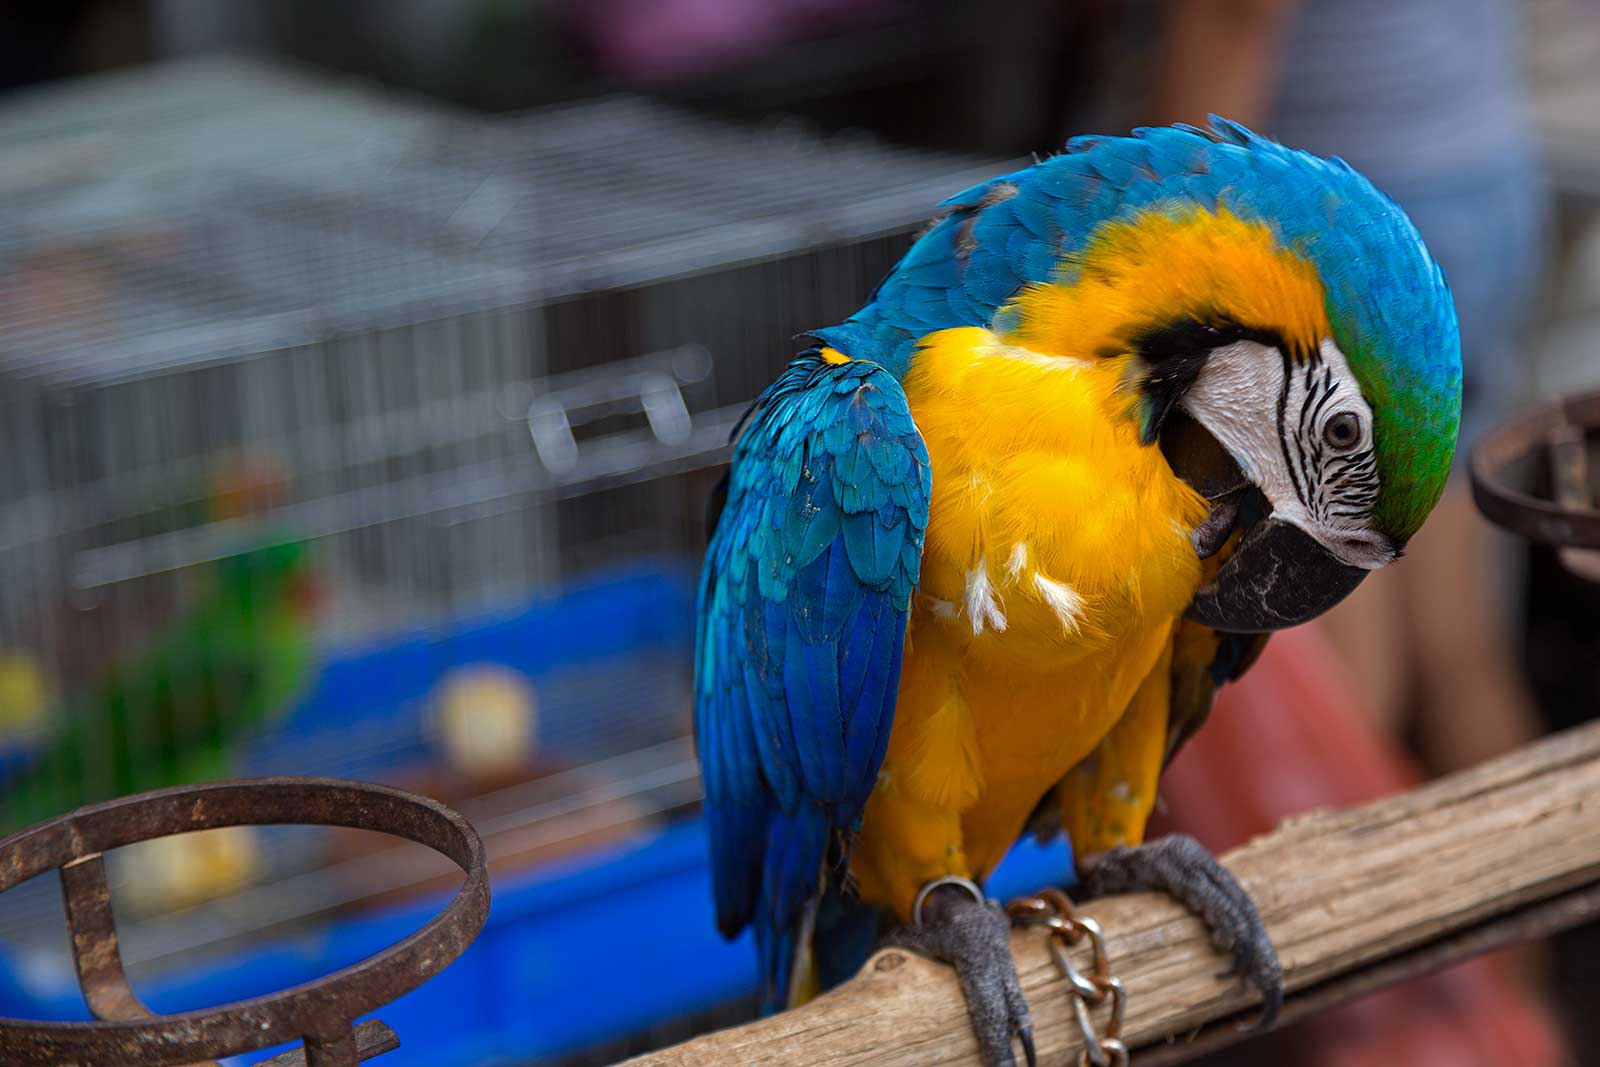 chatuchak-market-pet-section-ara-parrot